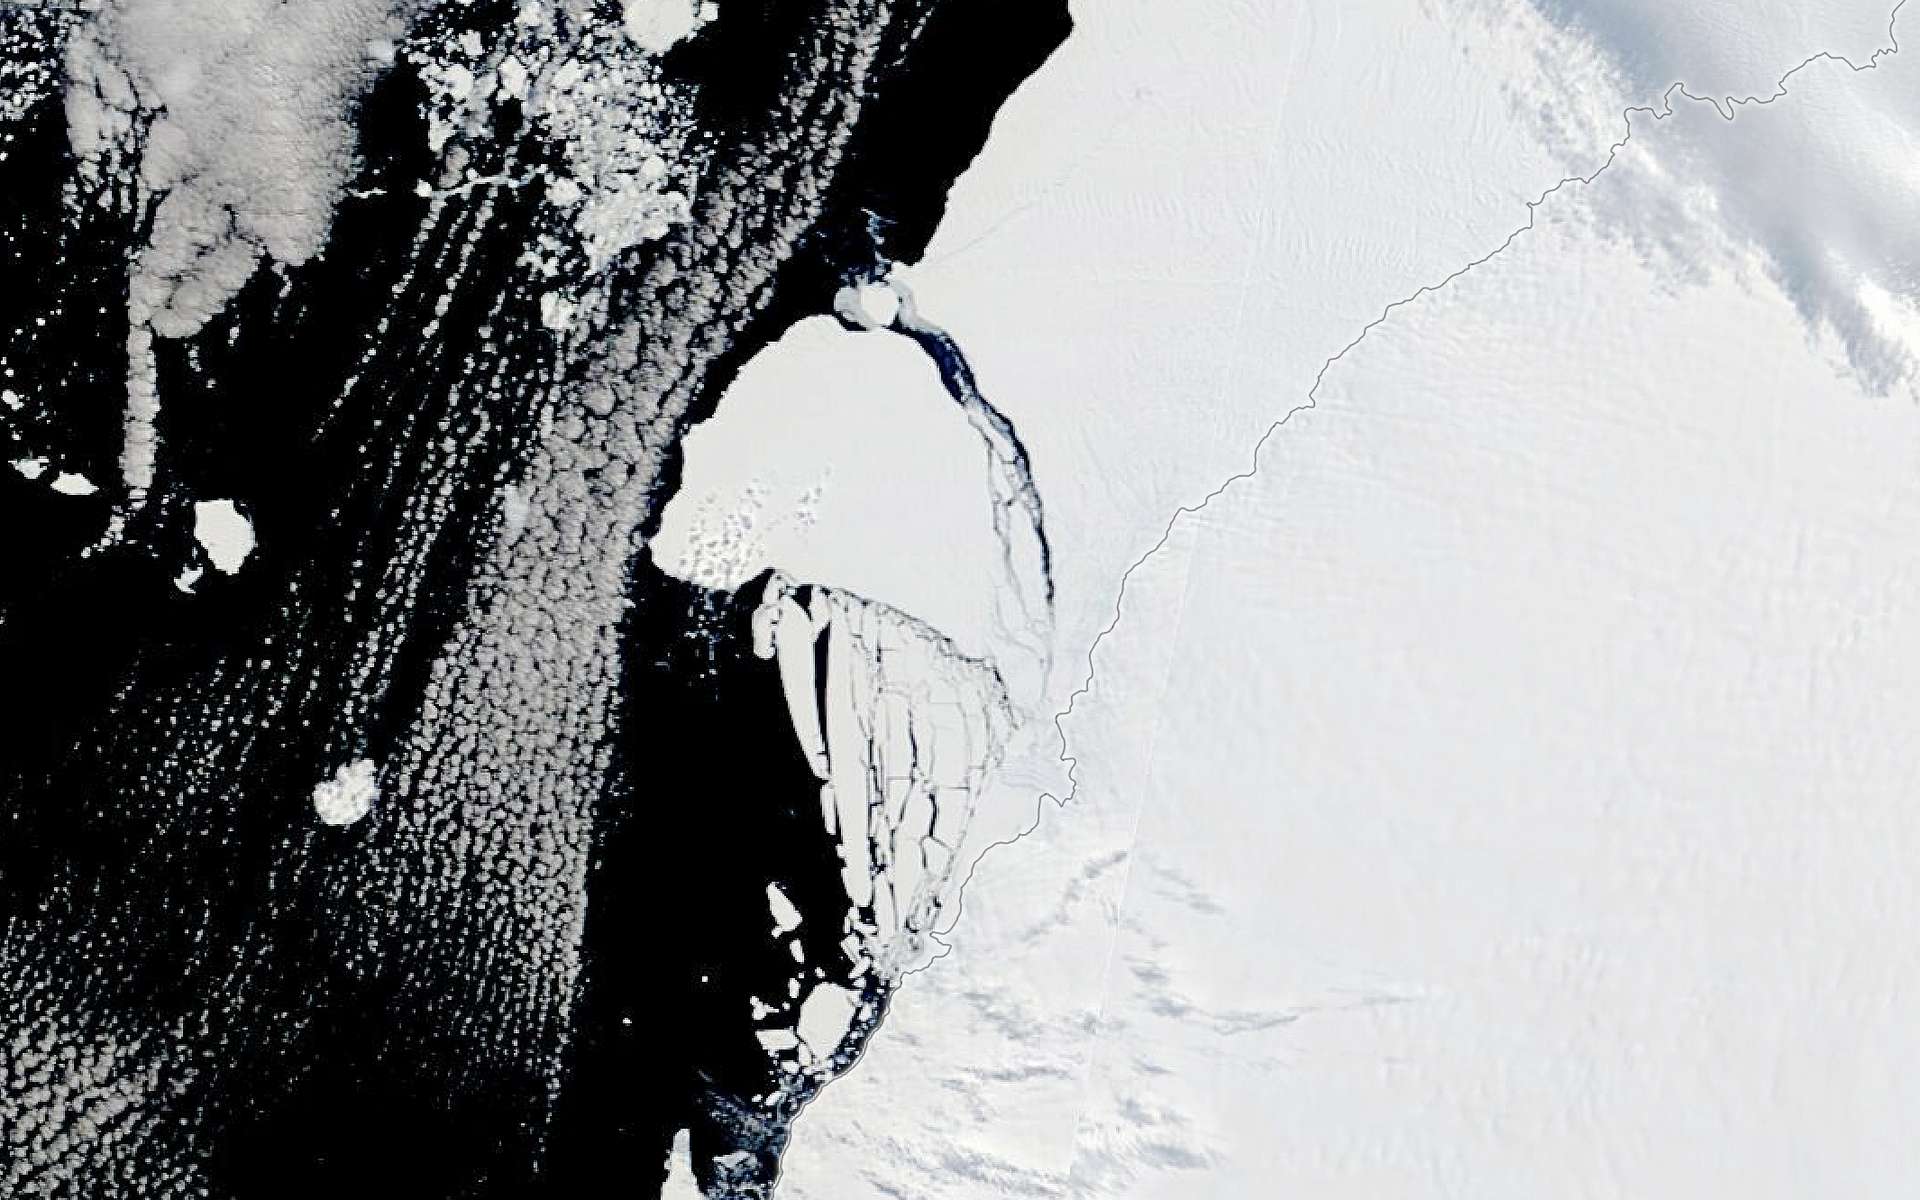 Un iceberg géant s'est détaché en Antarctique